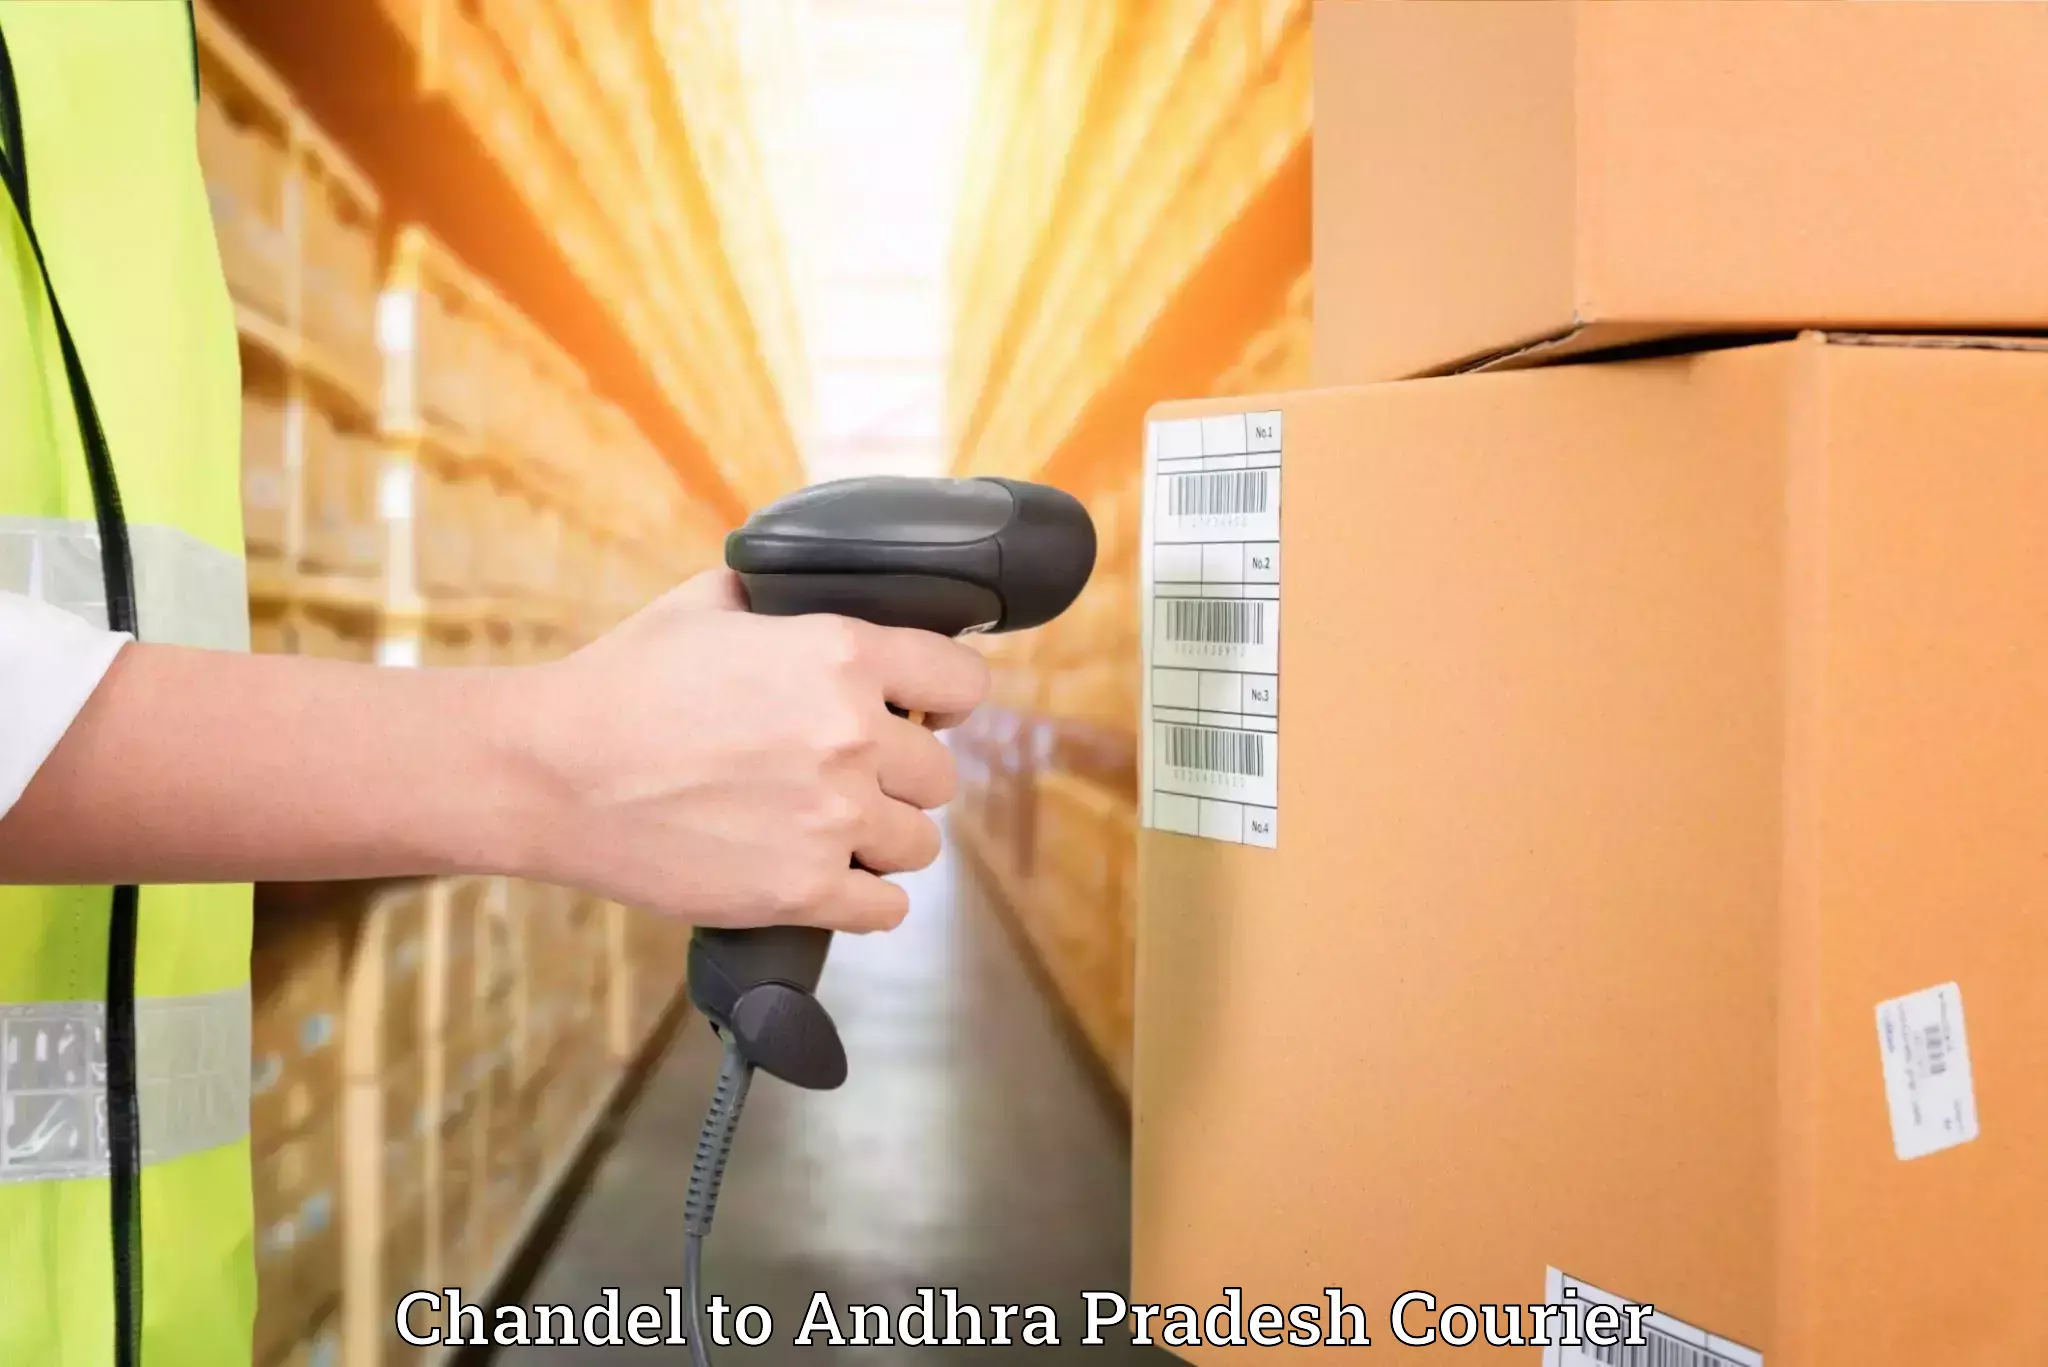 Furniture delivery service Chandel to Visakhapatnam Port